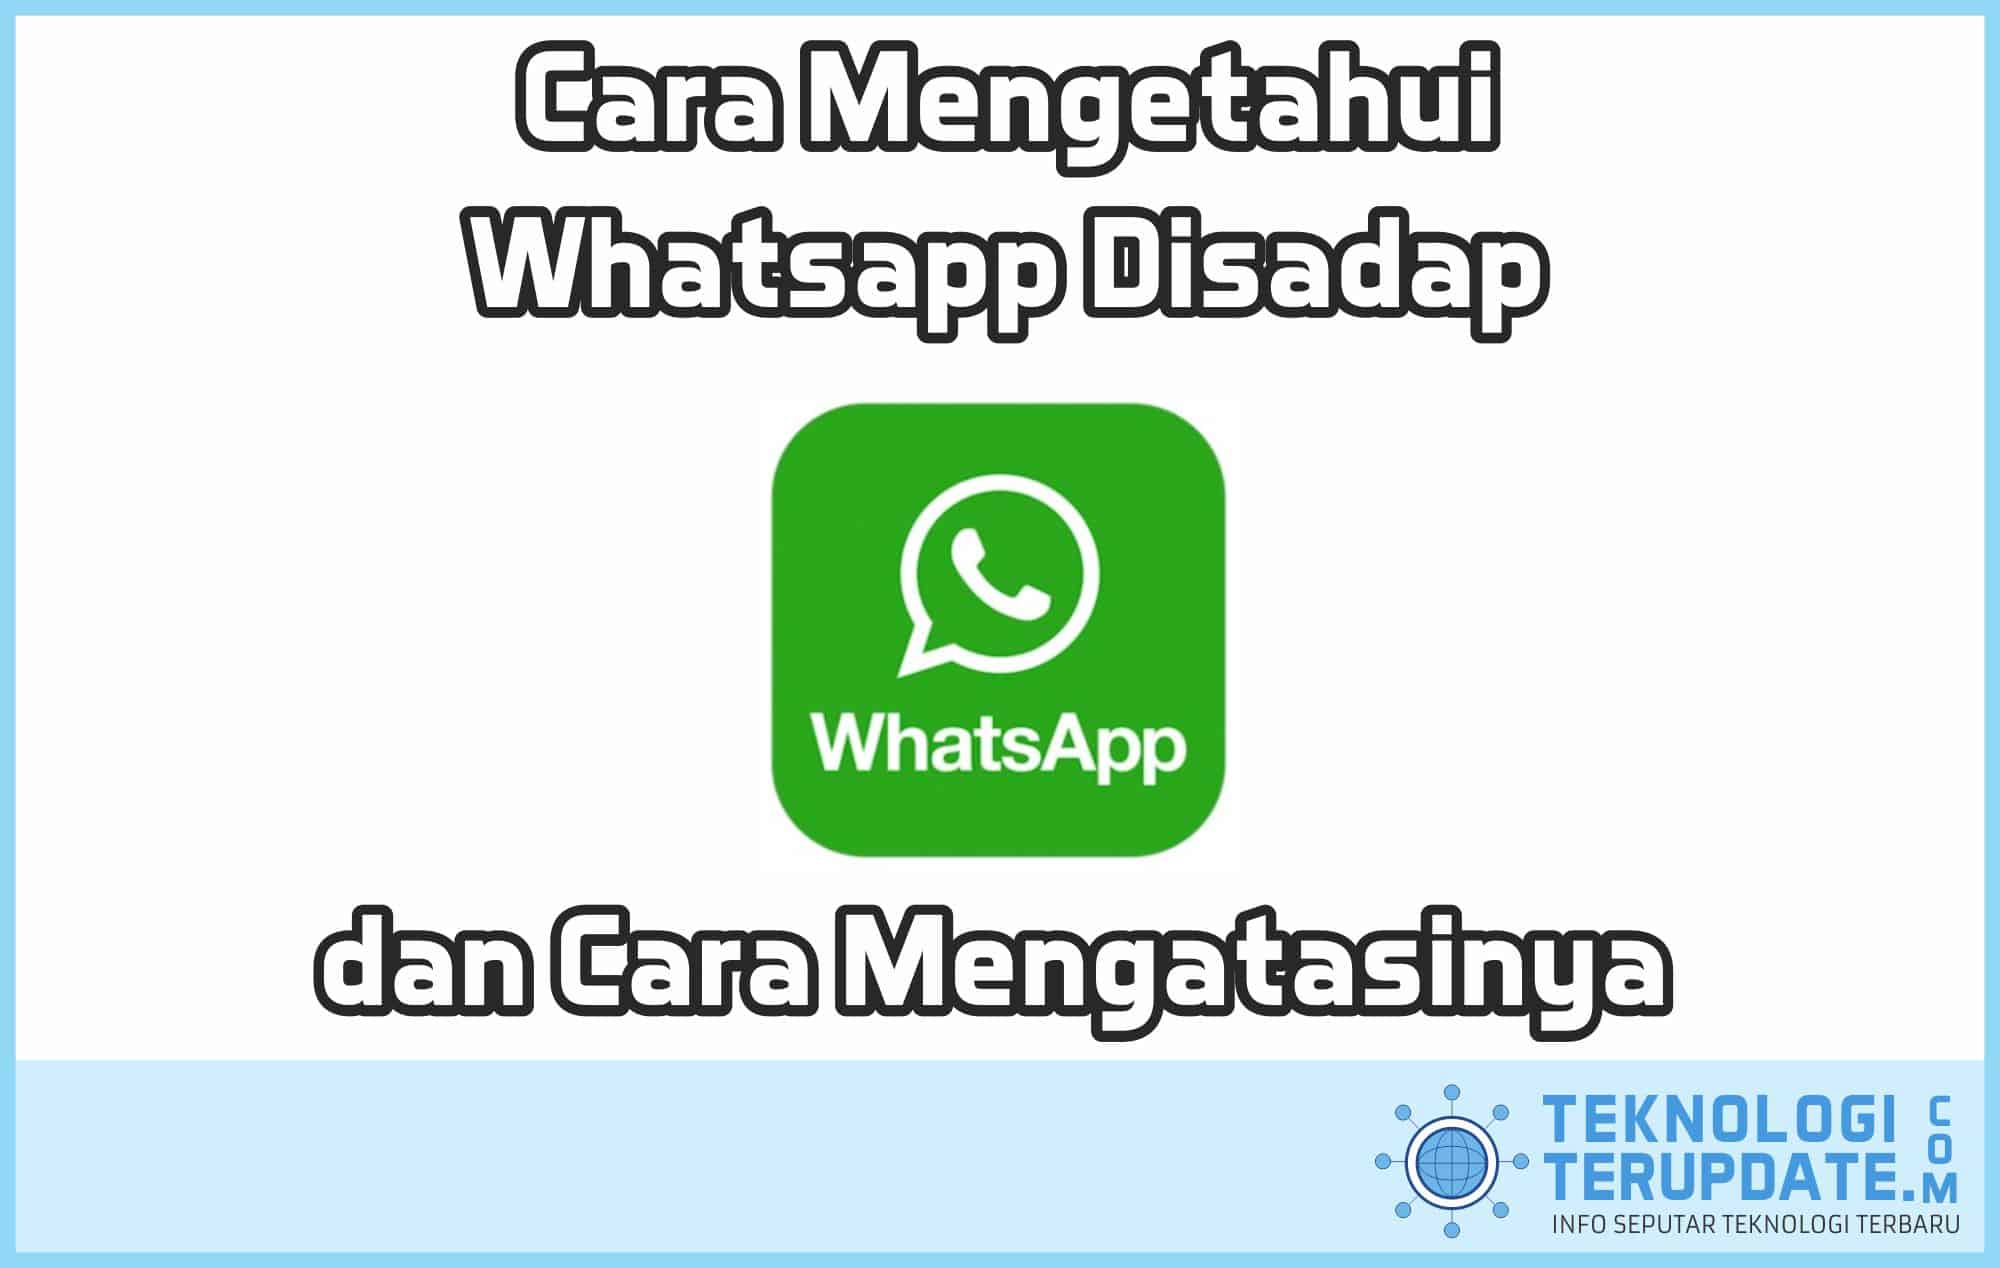 Cara Mengetahui Whatsapp Disadap